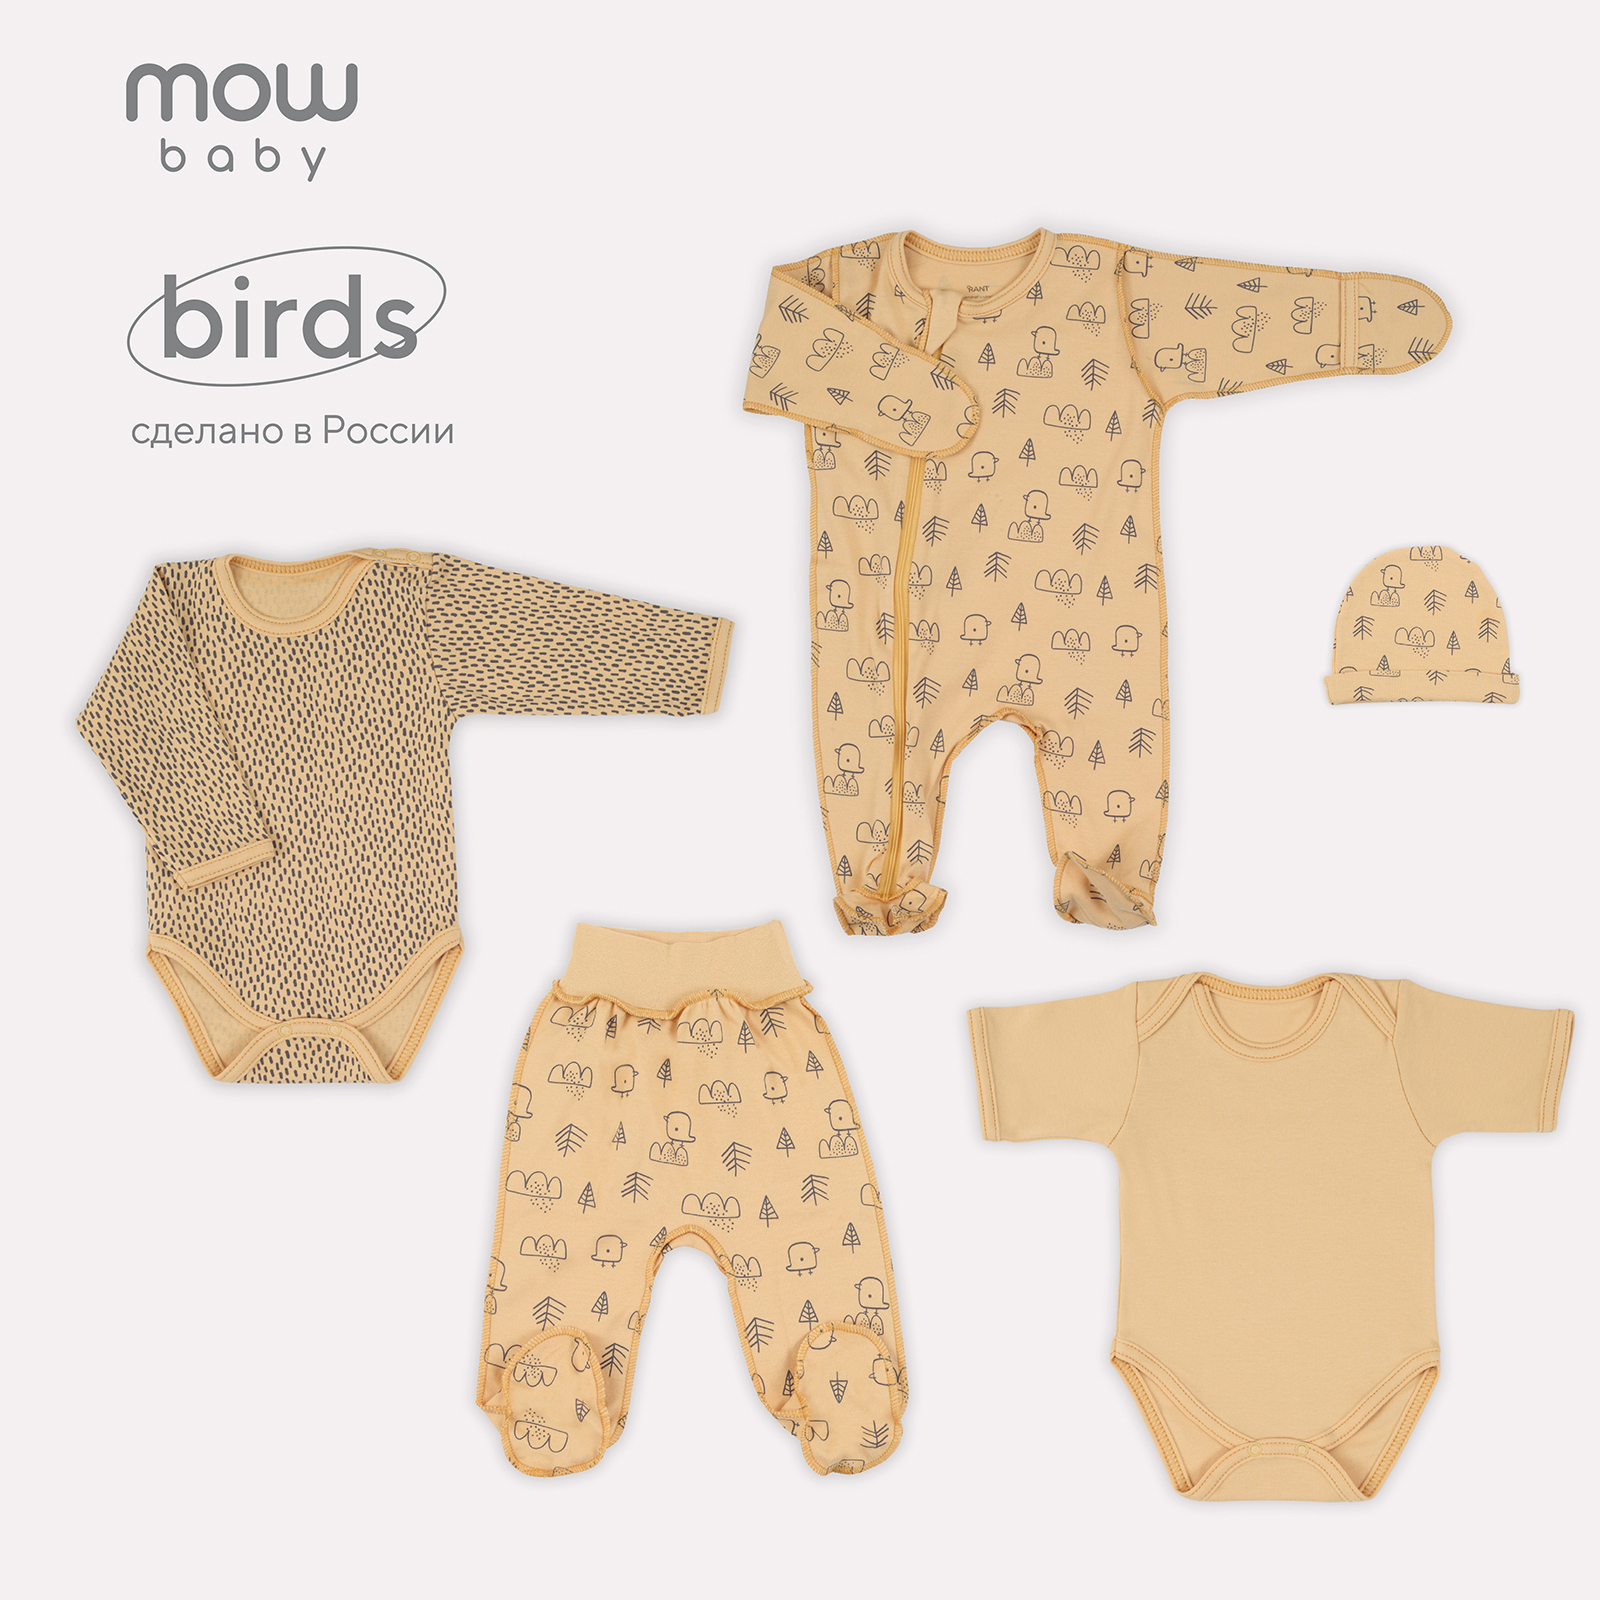 Комплект одежды для новорожденного MowBaby Birds Yellow 5-82 р.56 (5 предметов) mowbaby комплект для новорожденного birds 5 предметов